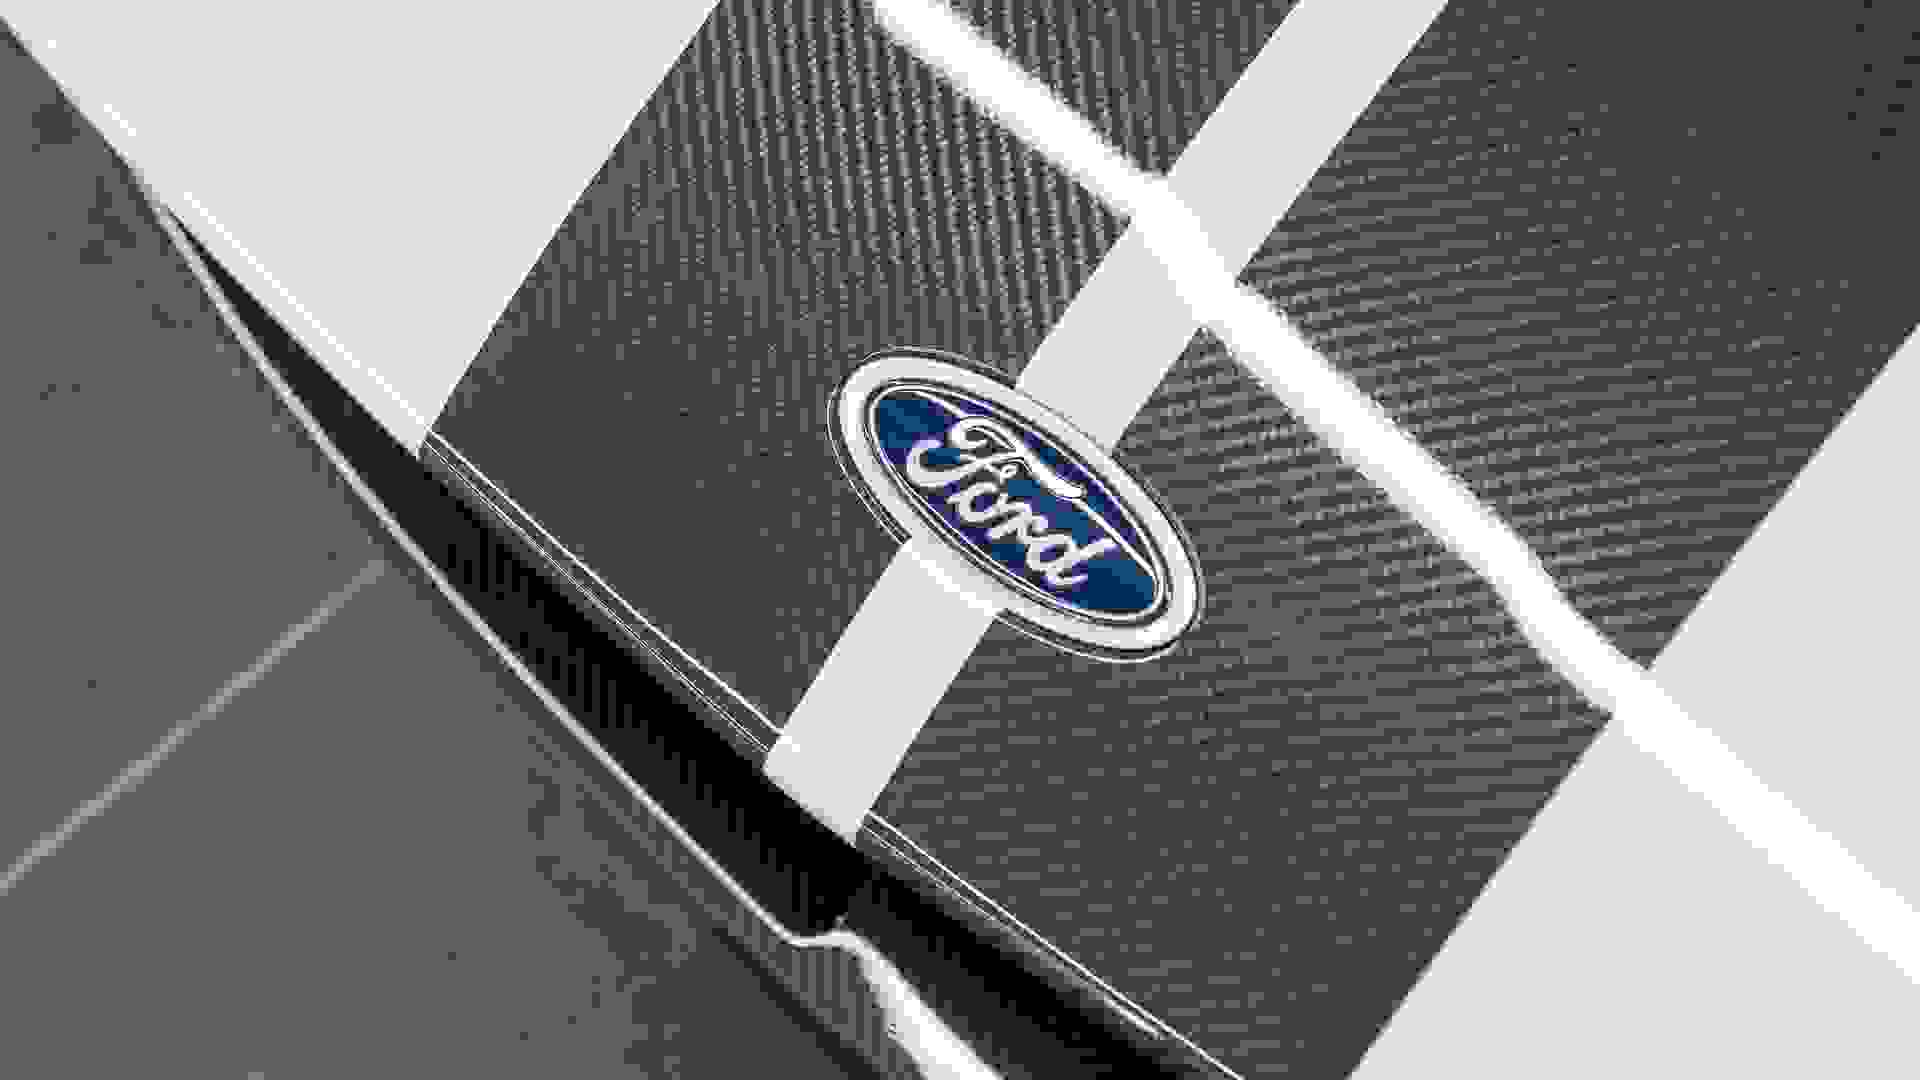 Ford GT Photo 38b83864-8ca3-4800-af89-36eb86513f0a.jpg